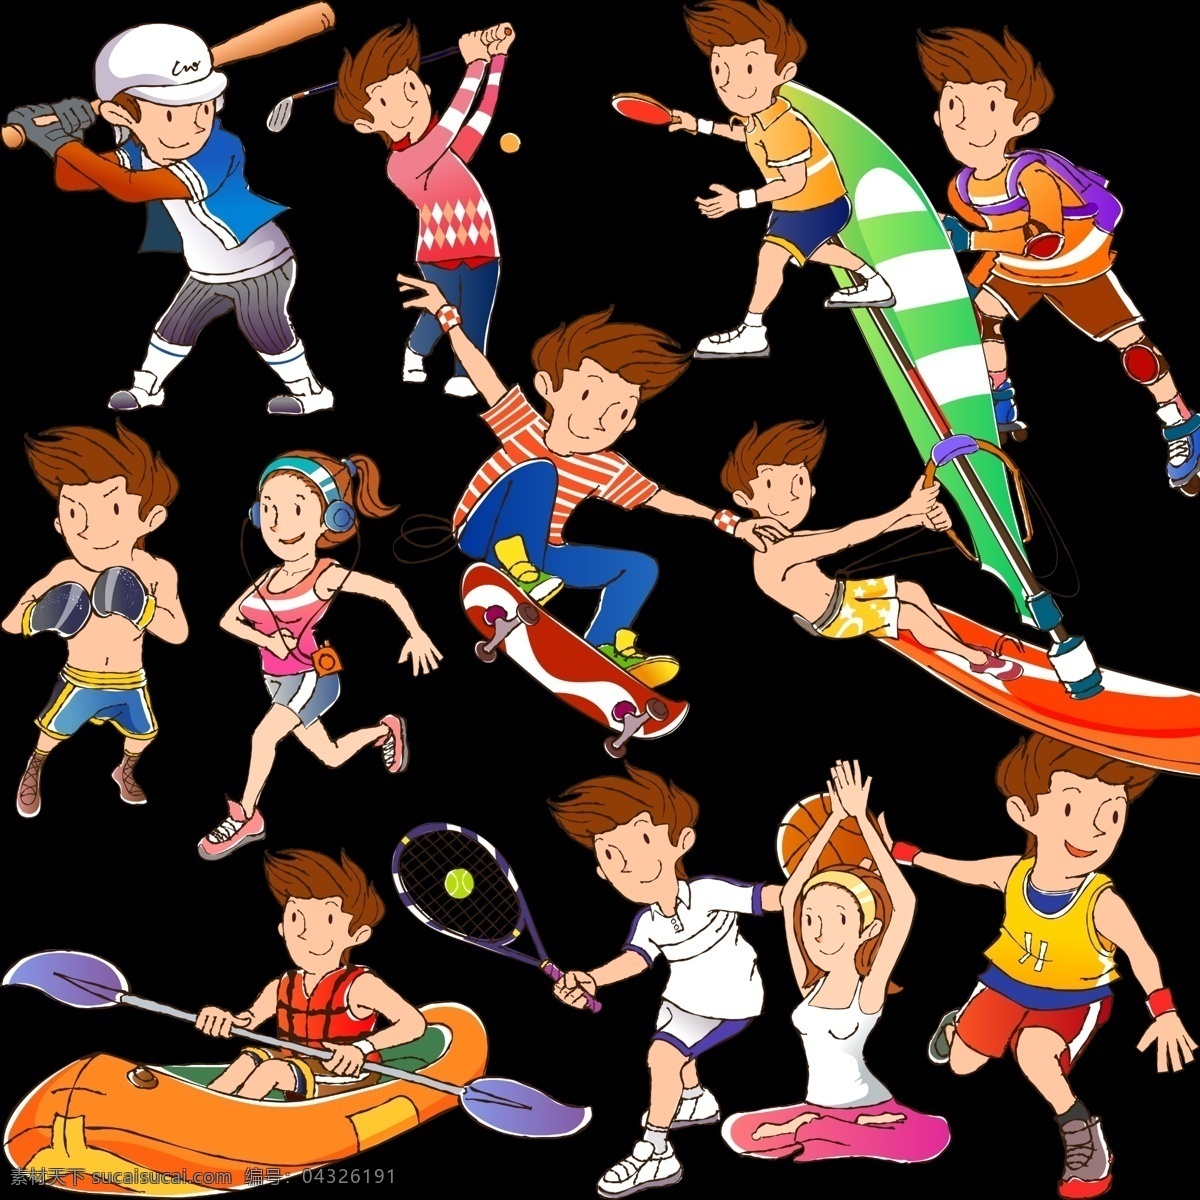 分层 冲浪 滑板 卡通 乒乓球 拳击 人物 赛跑 运动 模板下载 卡通人物运动 划艇 瑜伽 源文件 psd源文件